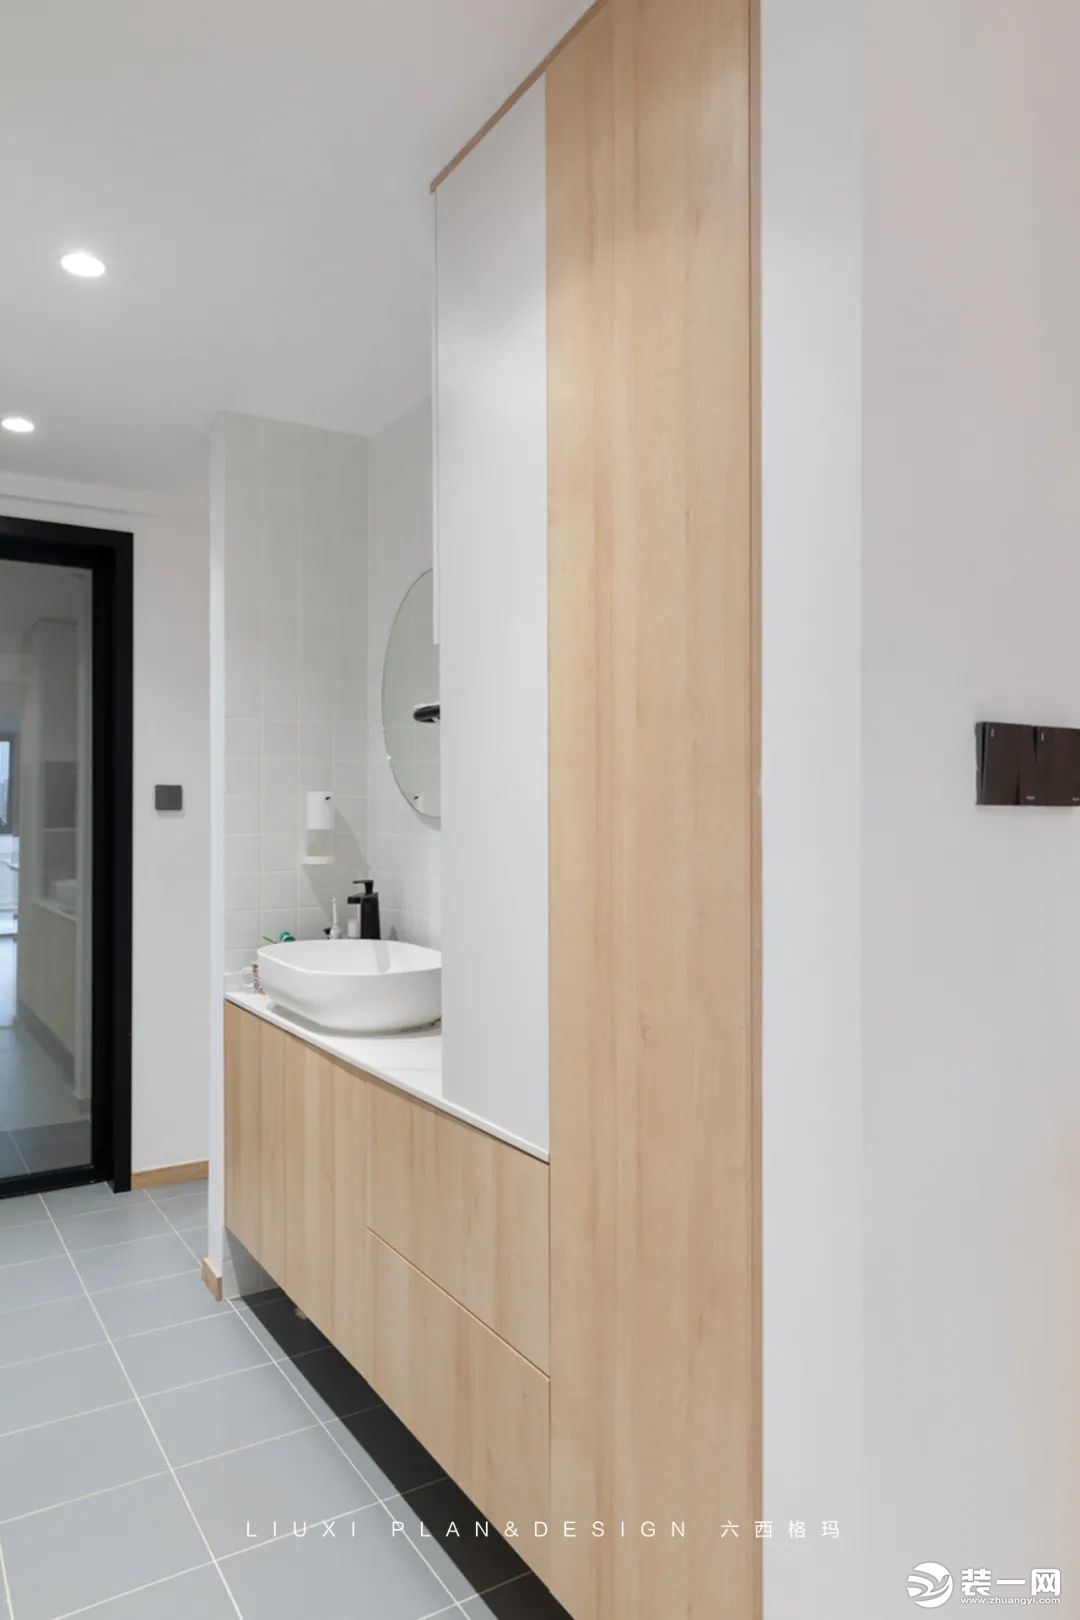 原始户型图中的卫生间空间较小，满足不了业主干湿分区和独立淋浴需求，设计师利用一部分房间区域，打造出三